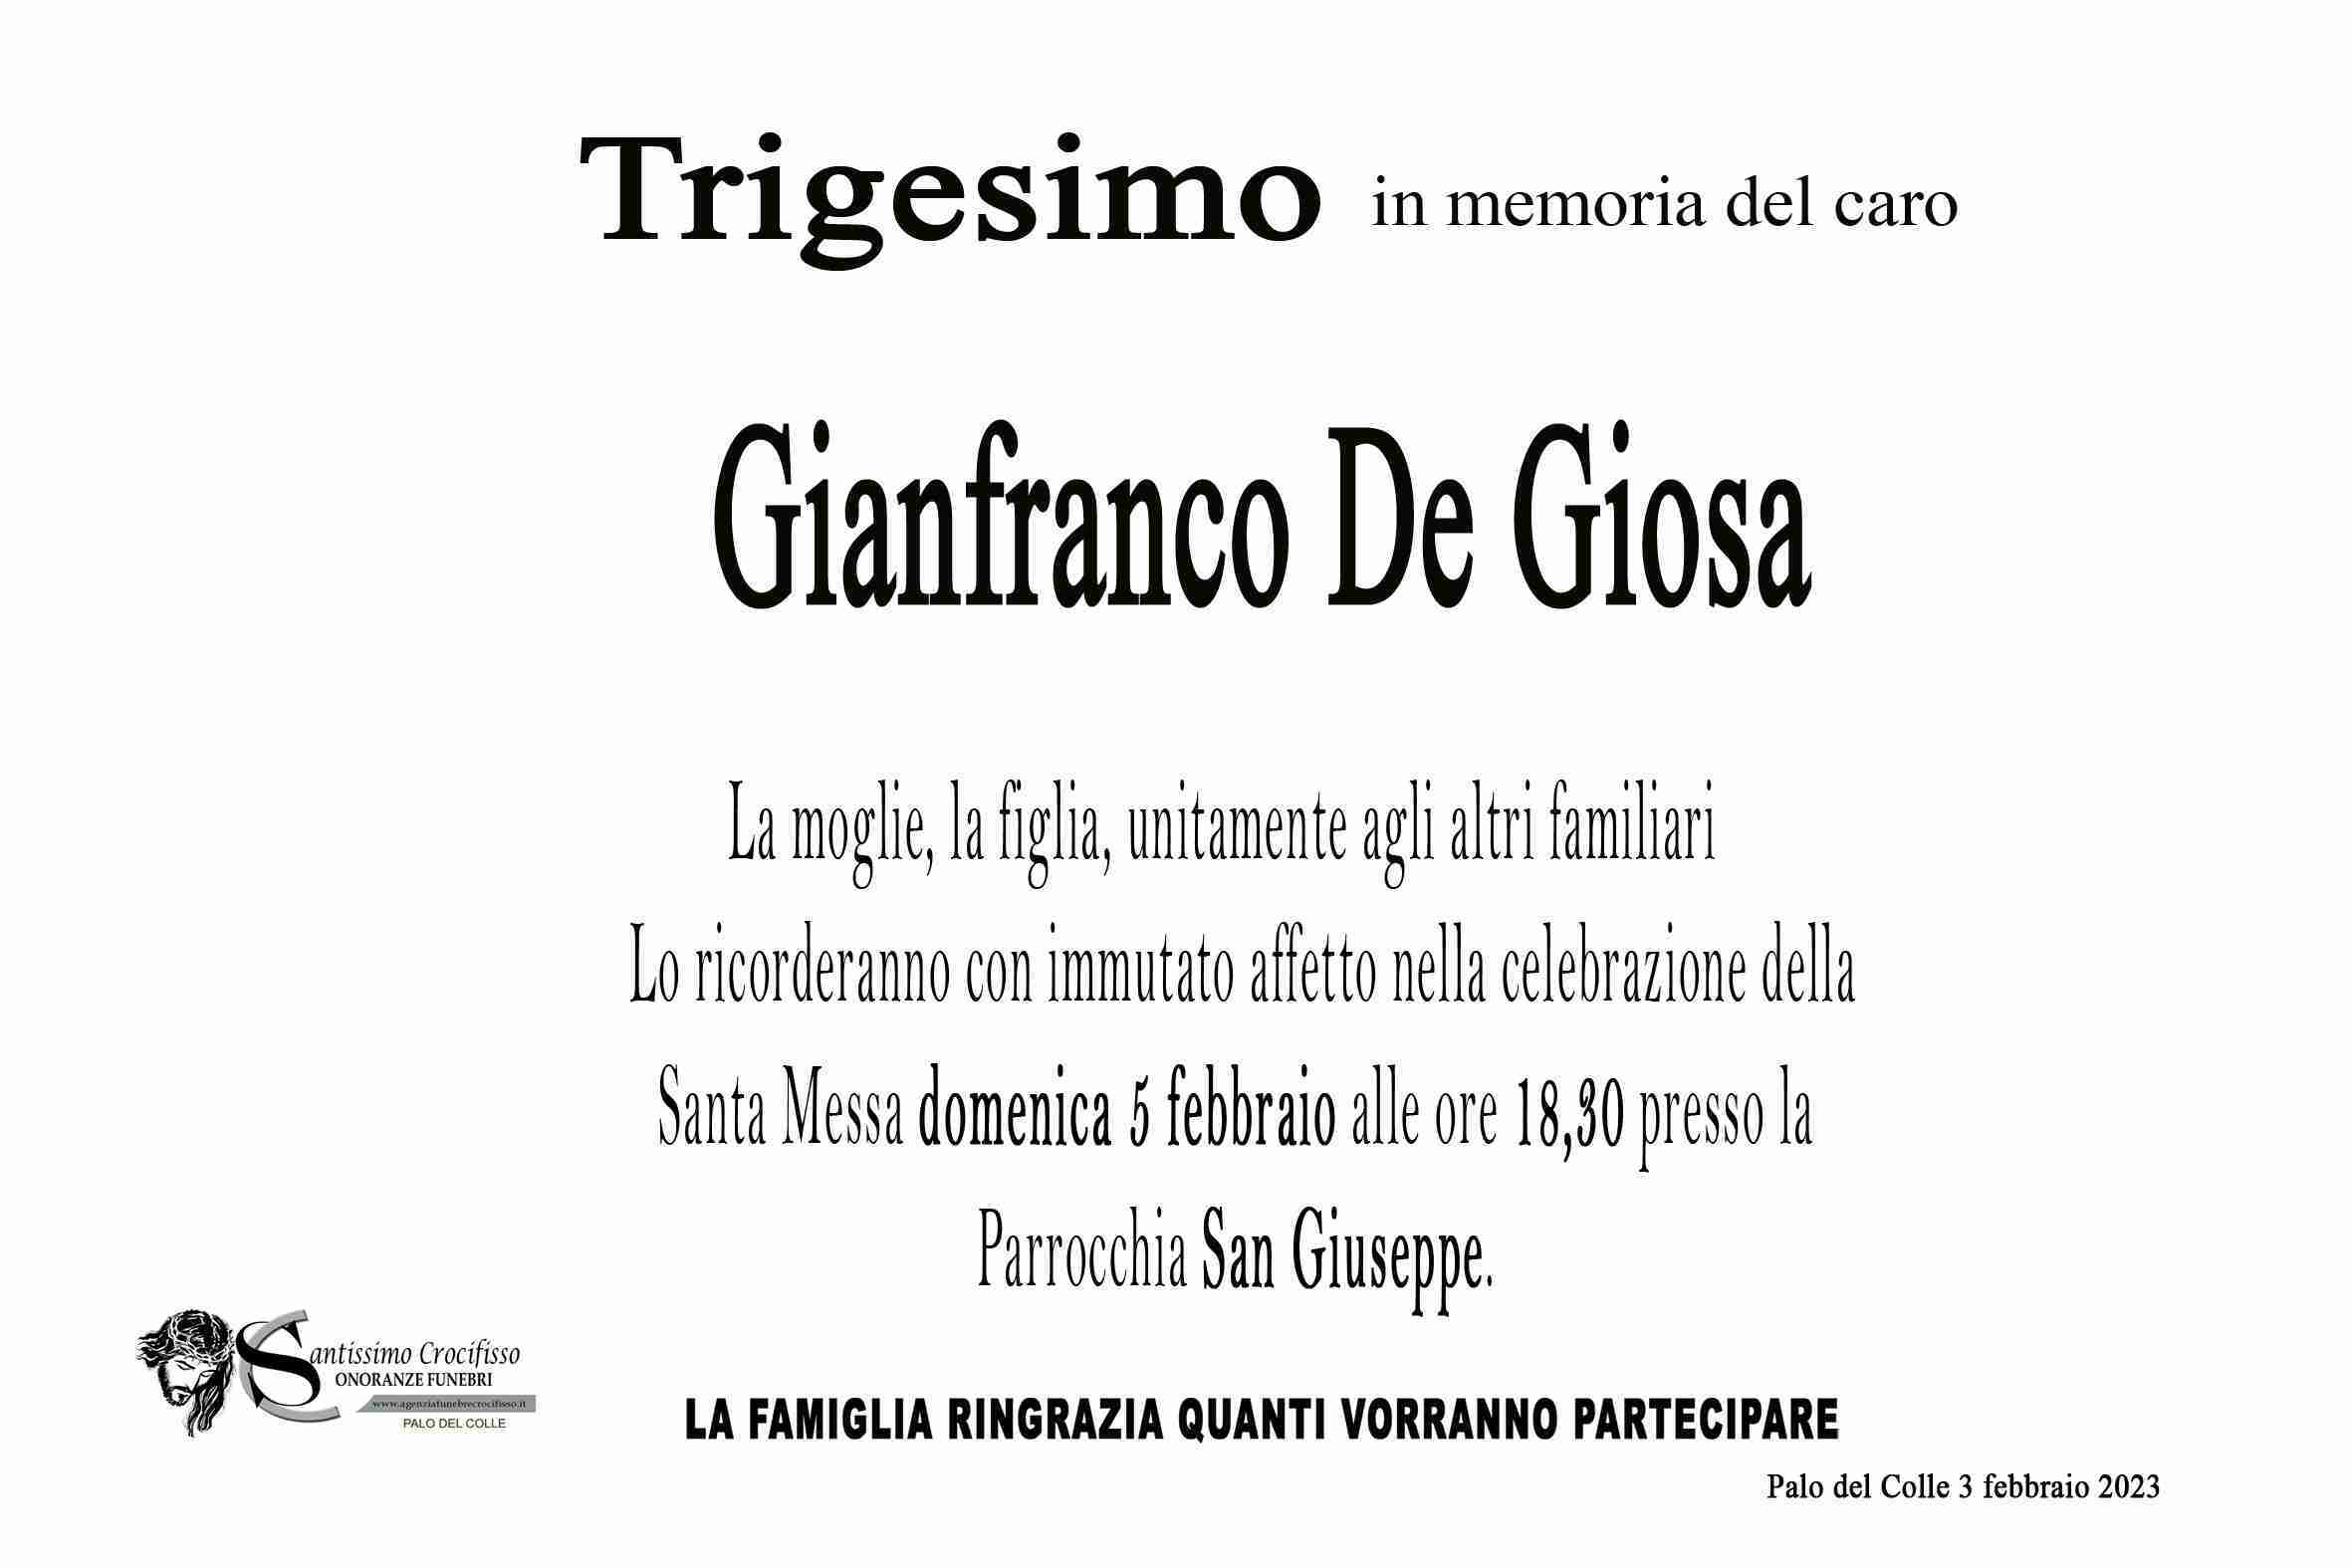 De Giosa Gianfranco